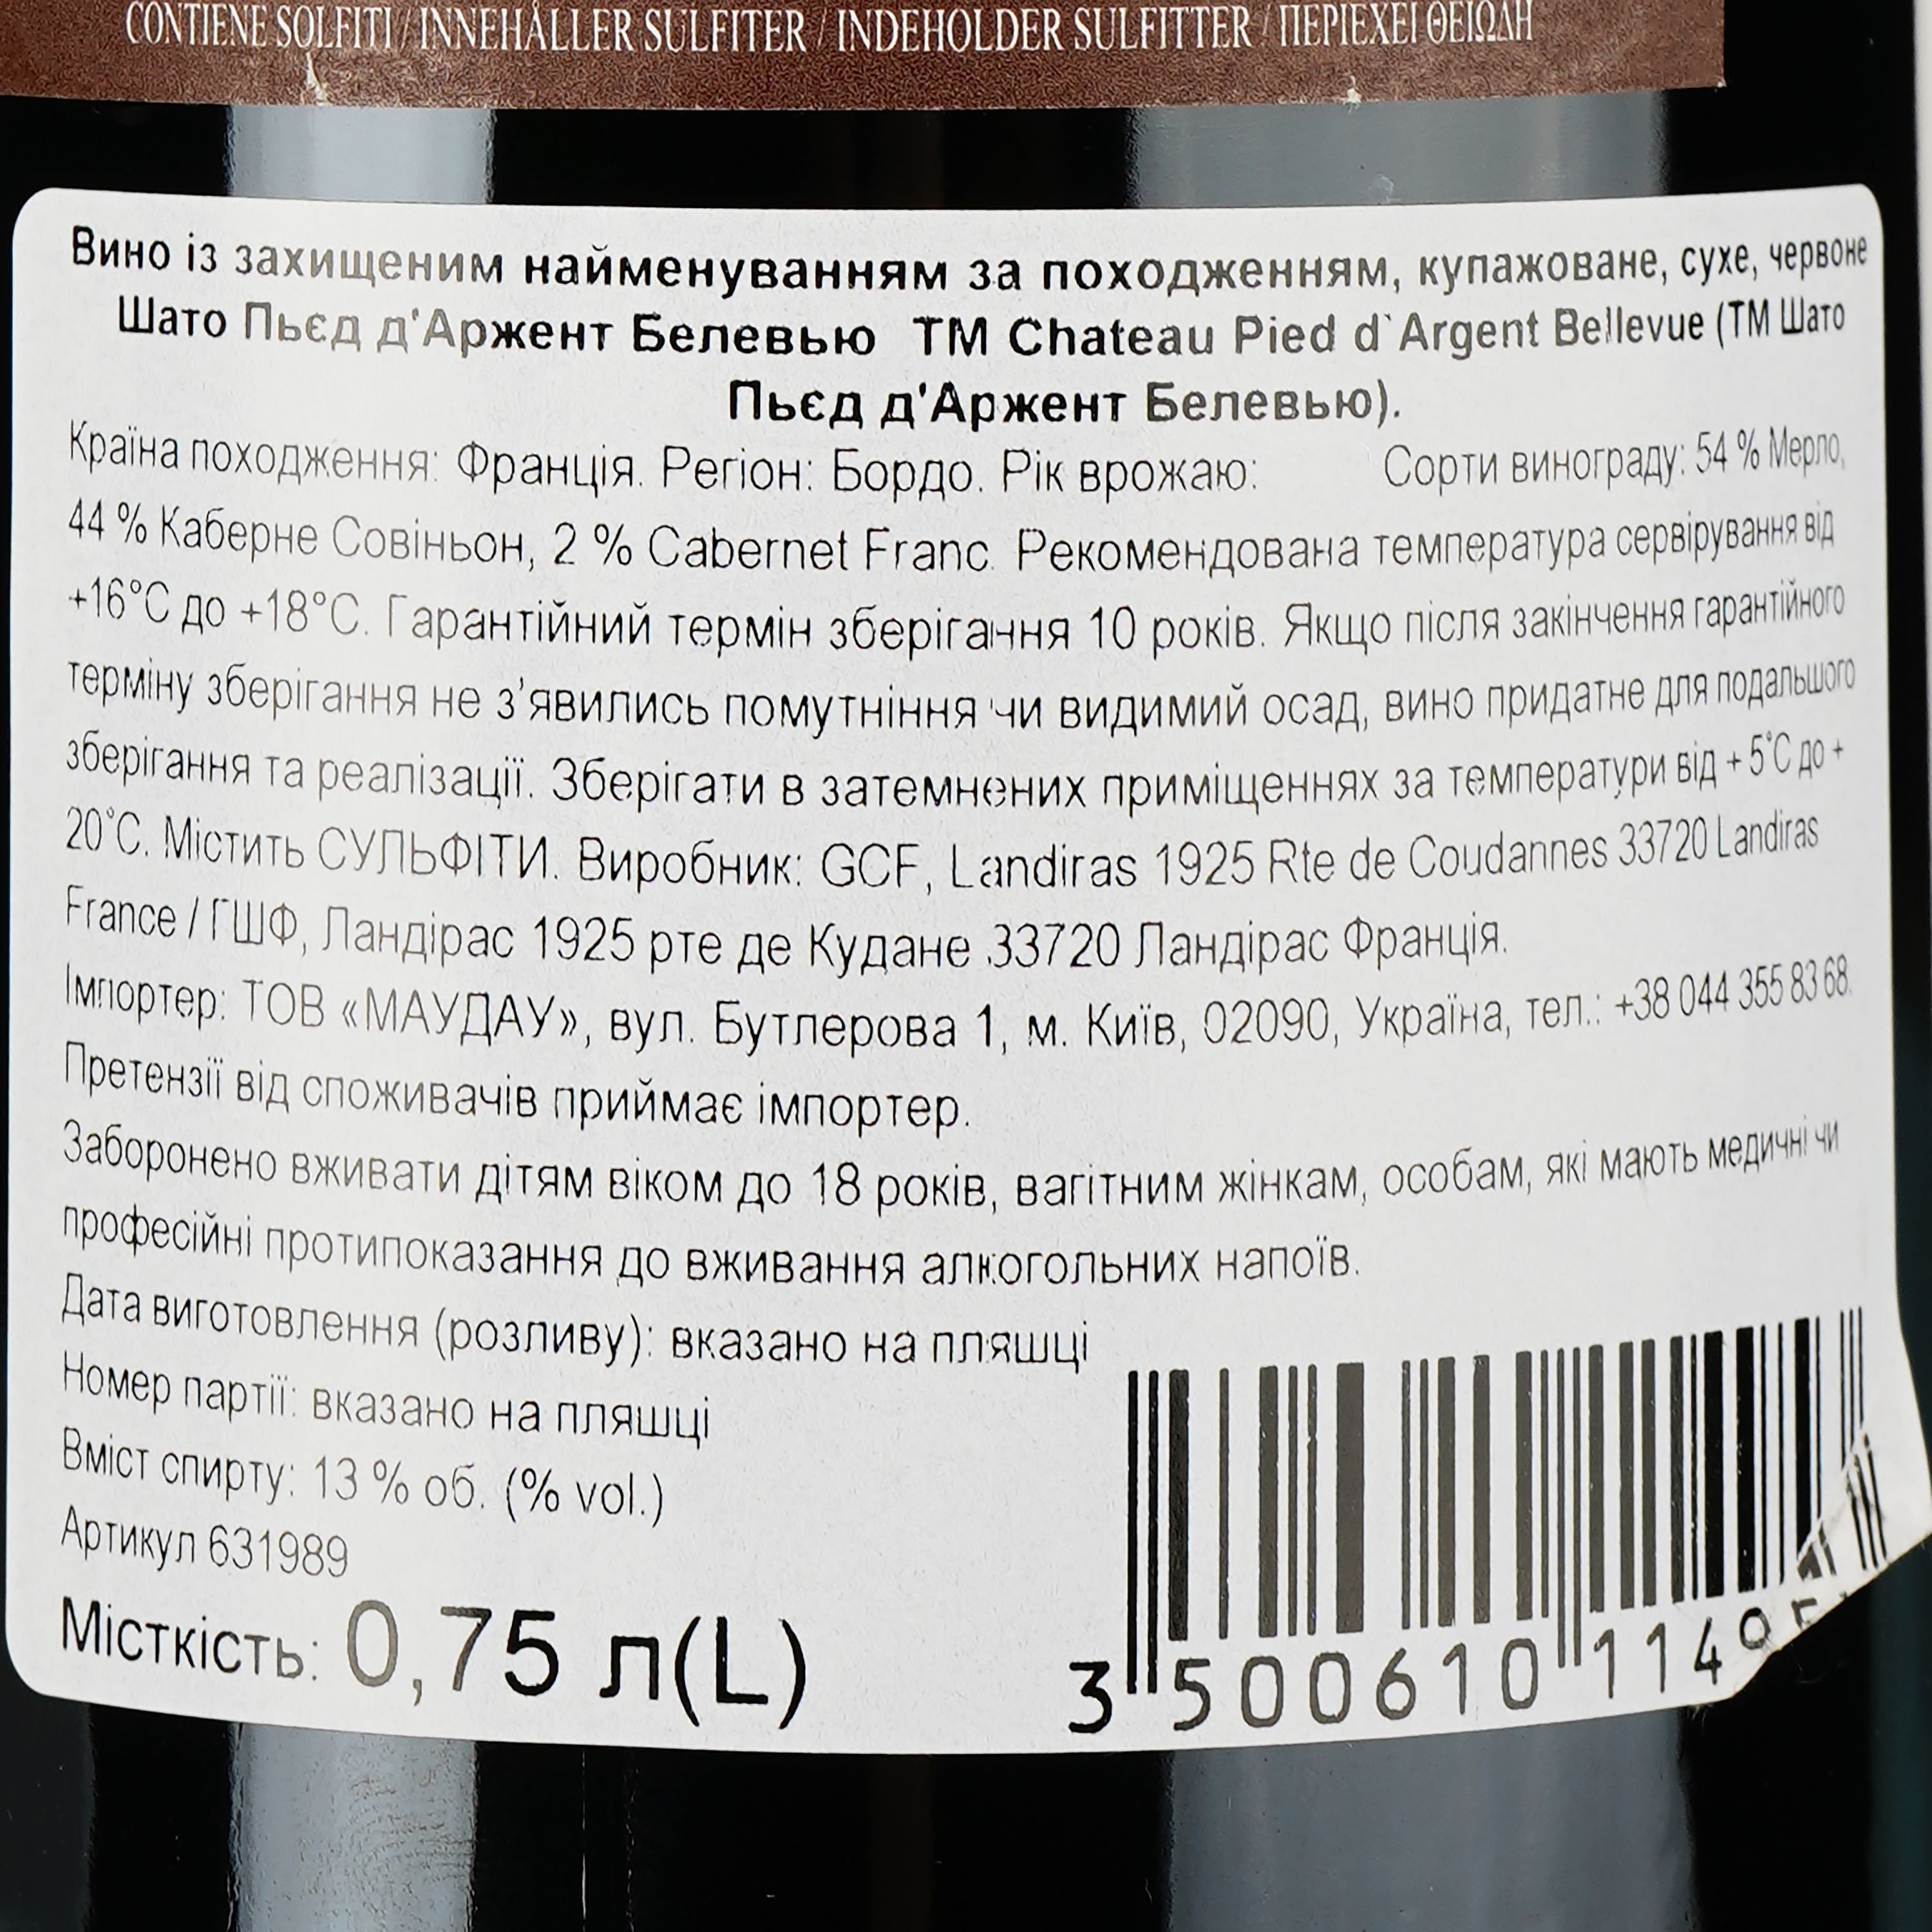 Вино Chateau Pied D'Argent Bellevue AOP Bordeaux 2020 красное сухое 0.75 л - фото 3